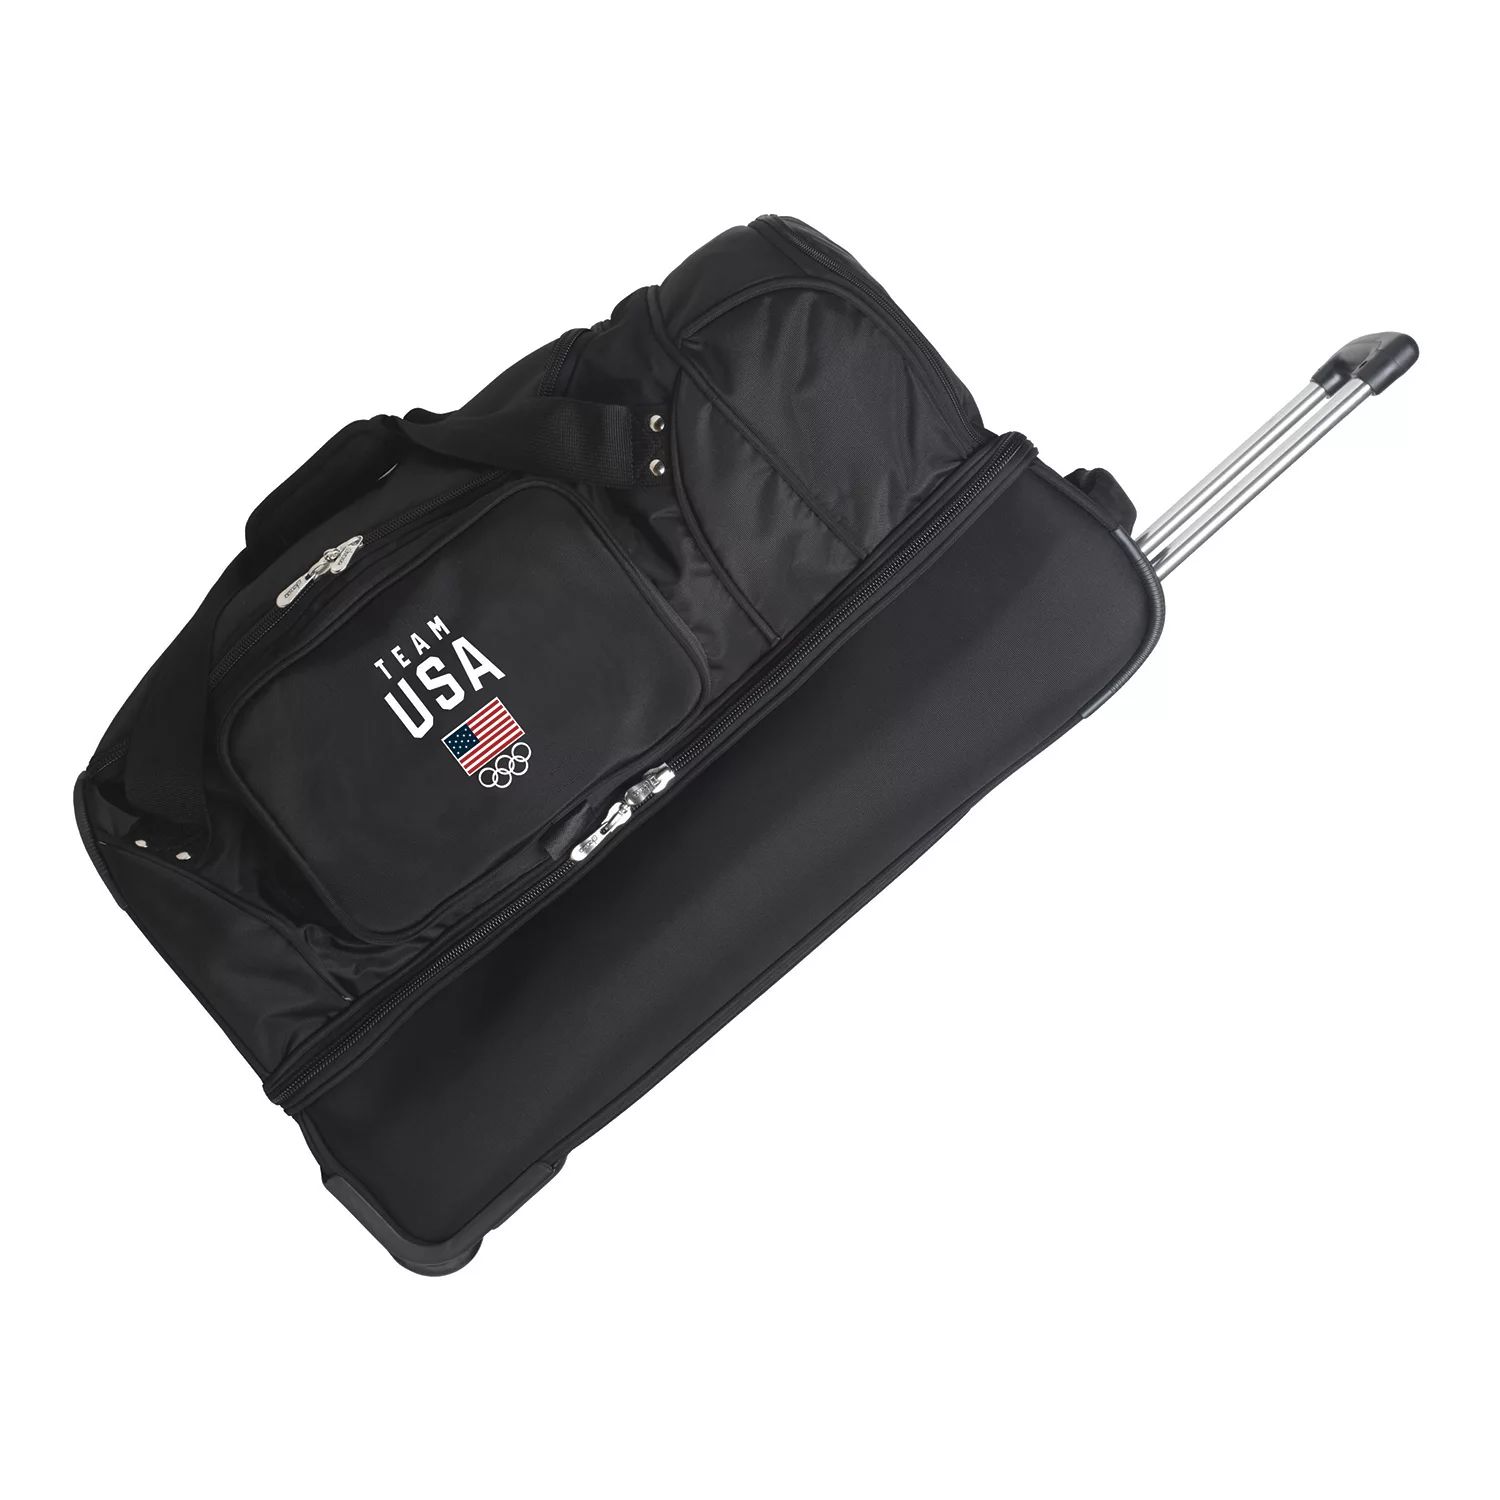 Спортивная сумка Denco с откидным дном, 27 дюймов, олимпийская сборная США Denco denco 4 way buffing block 2777 1 tool